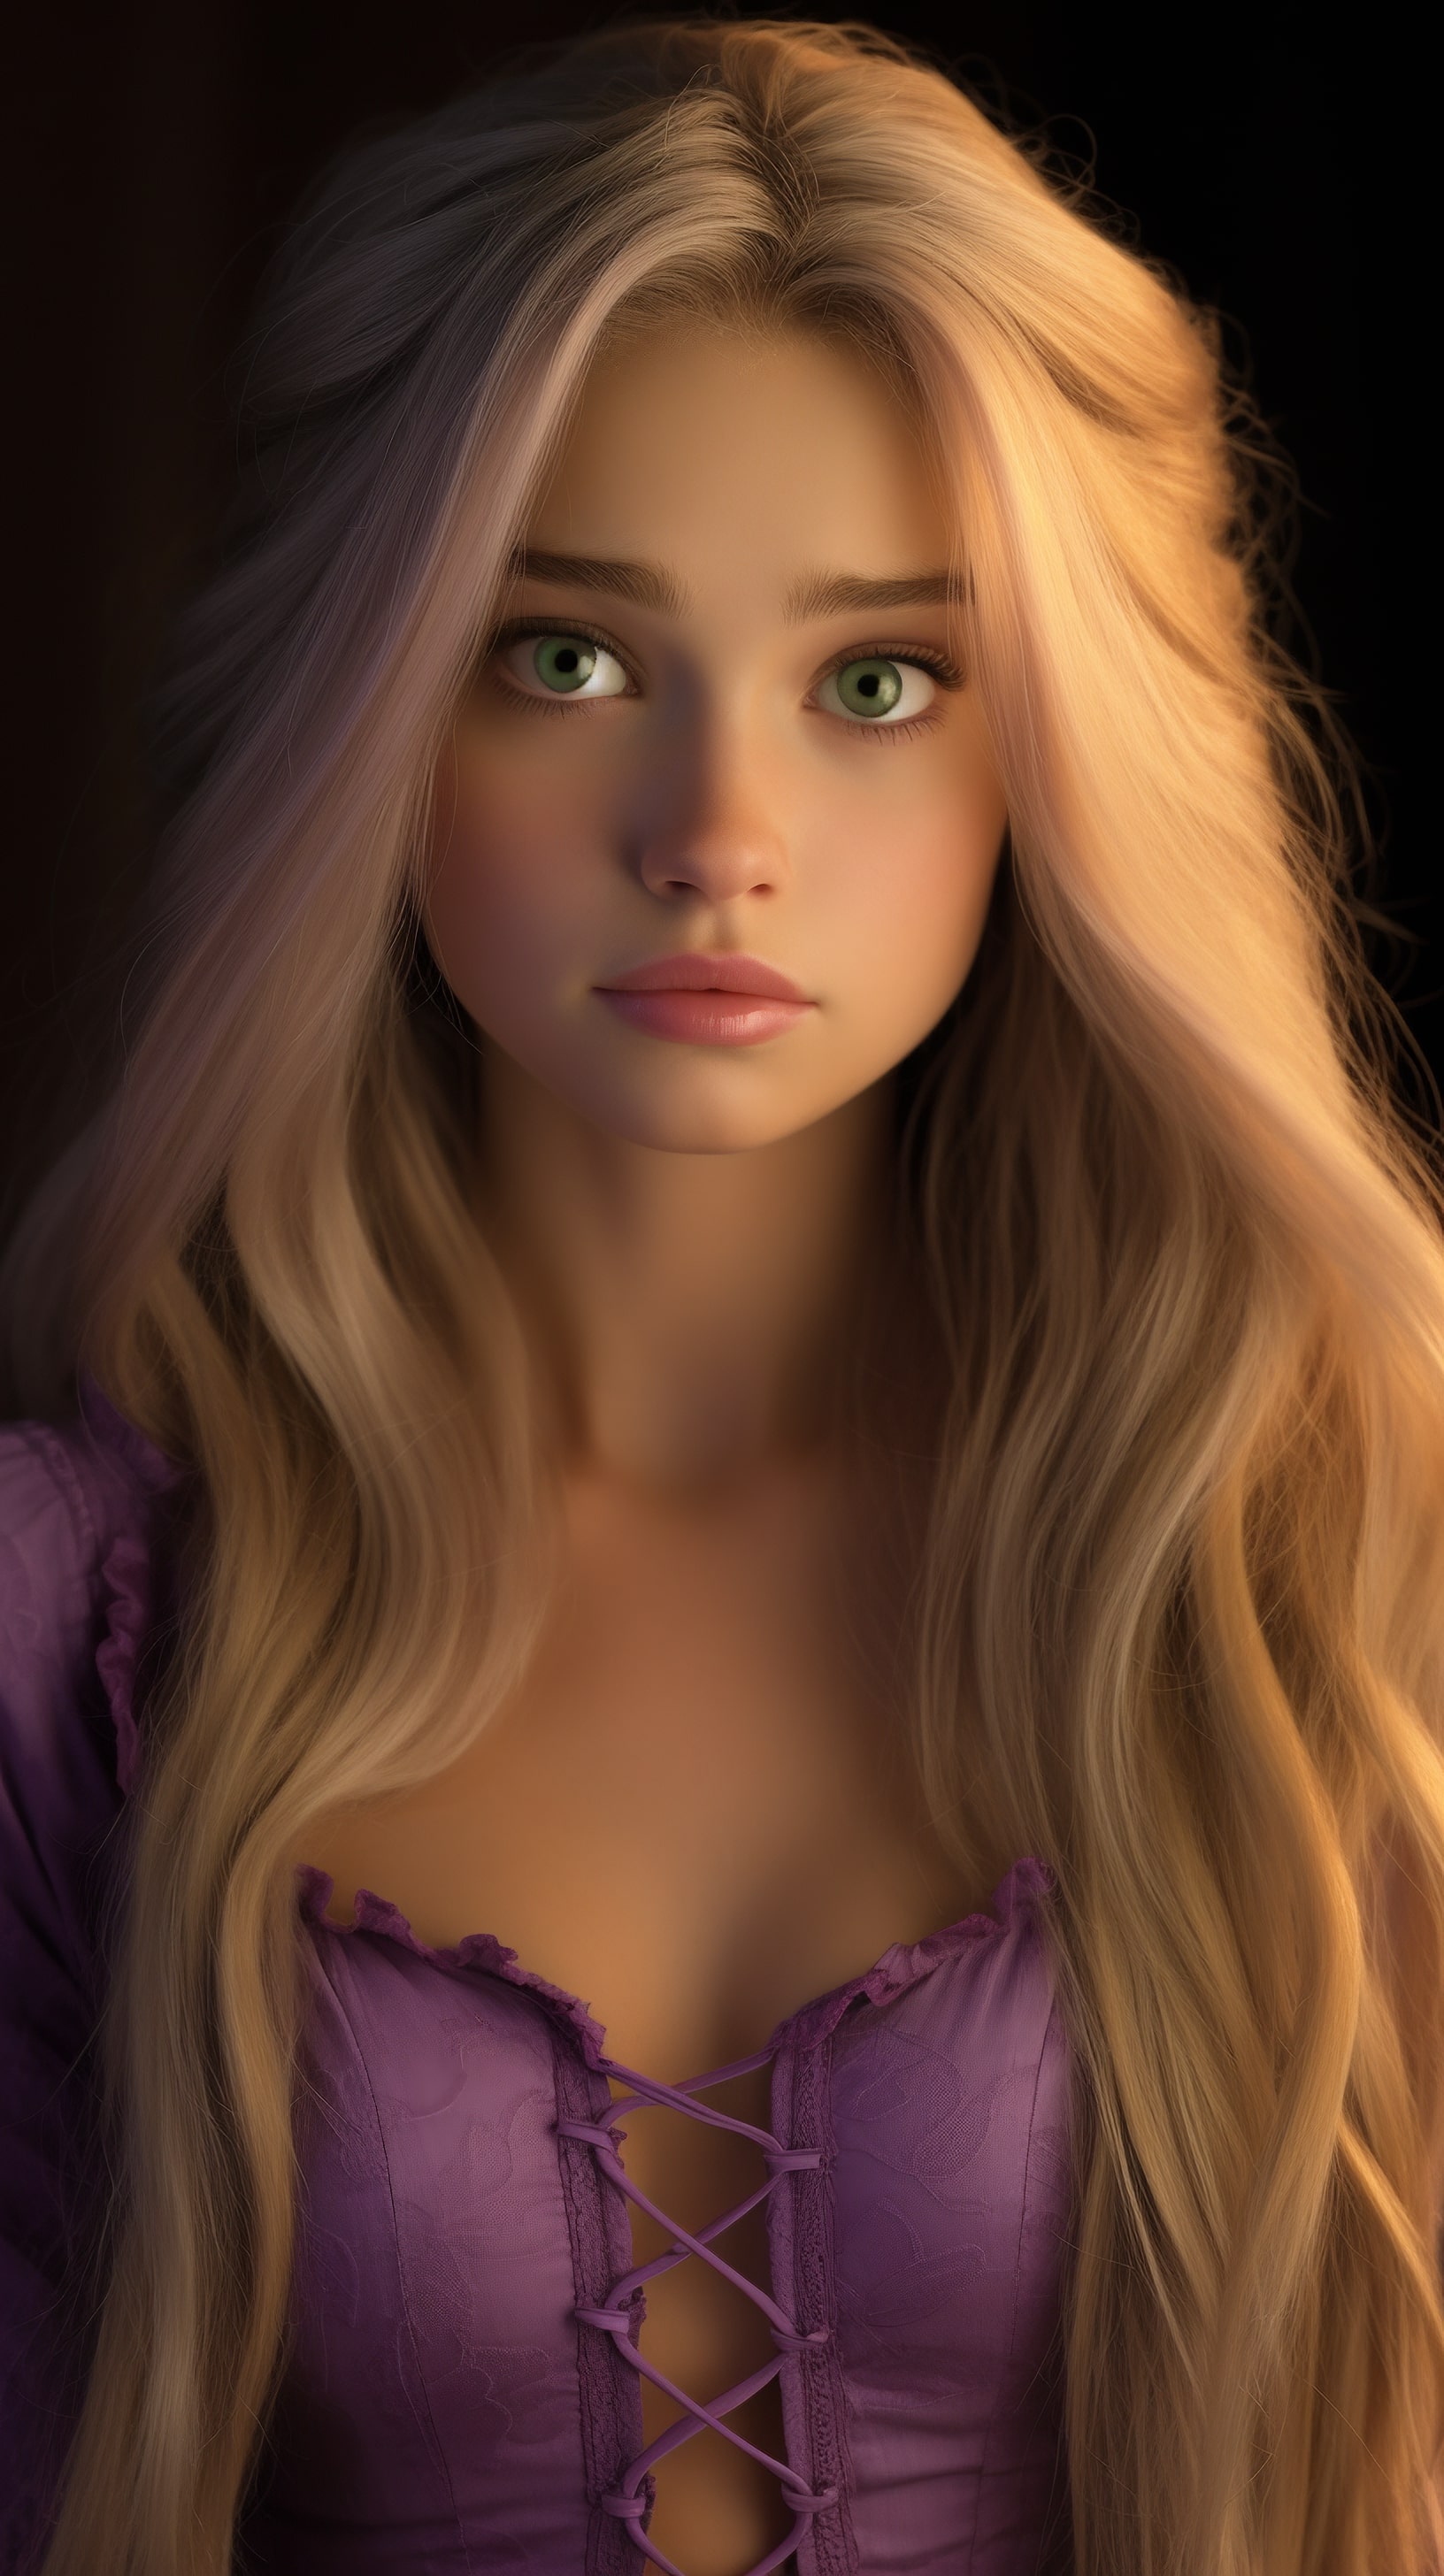 Green-eyed blonde in a purple dress